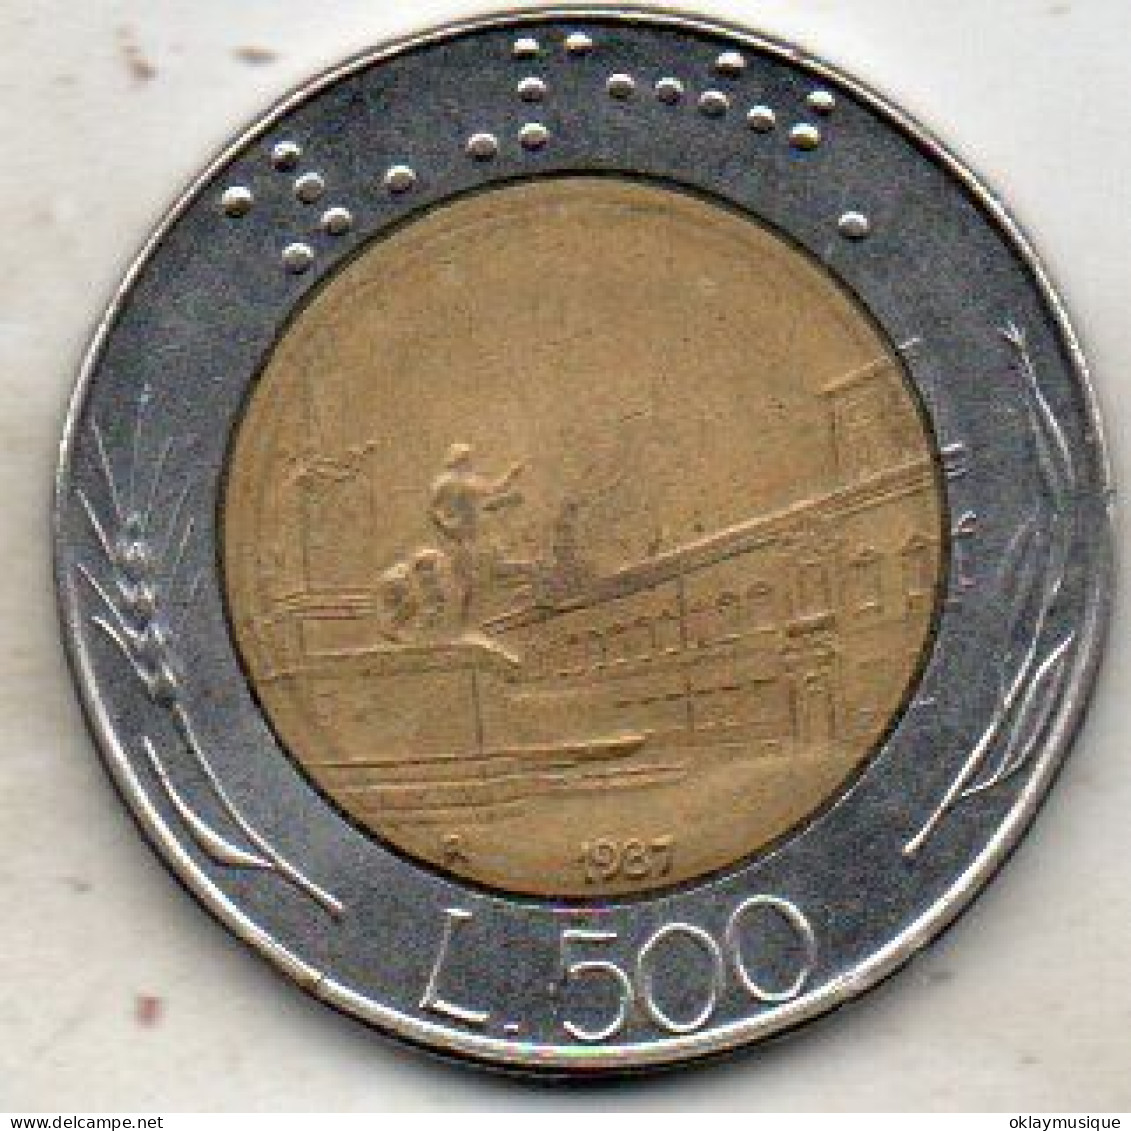 500 Lires 1987 - 500 Lire